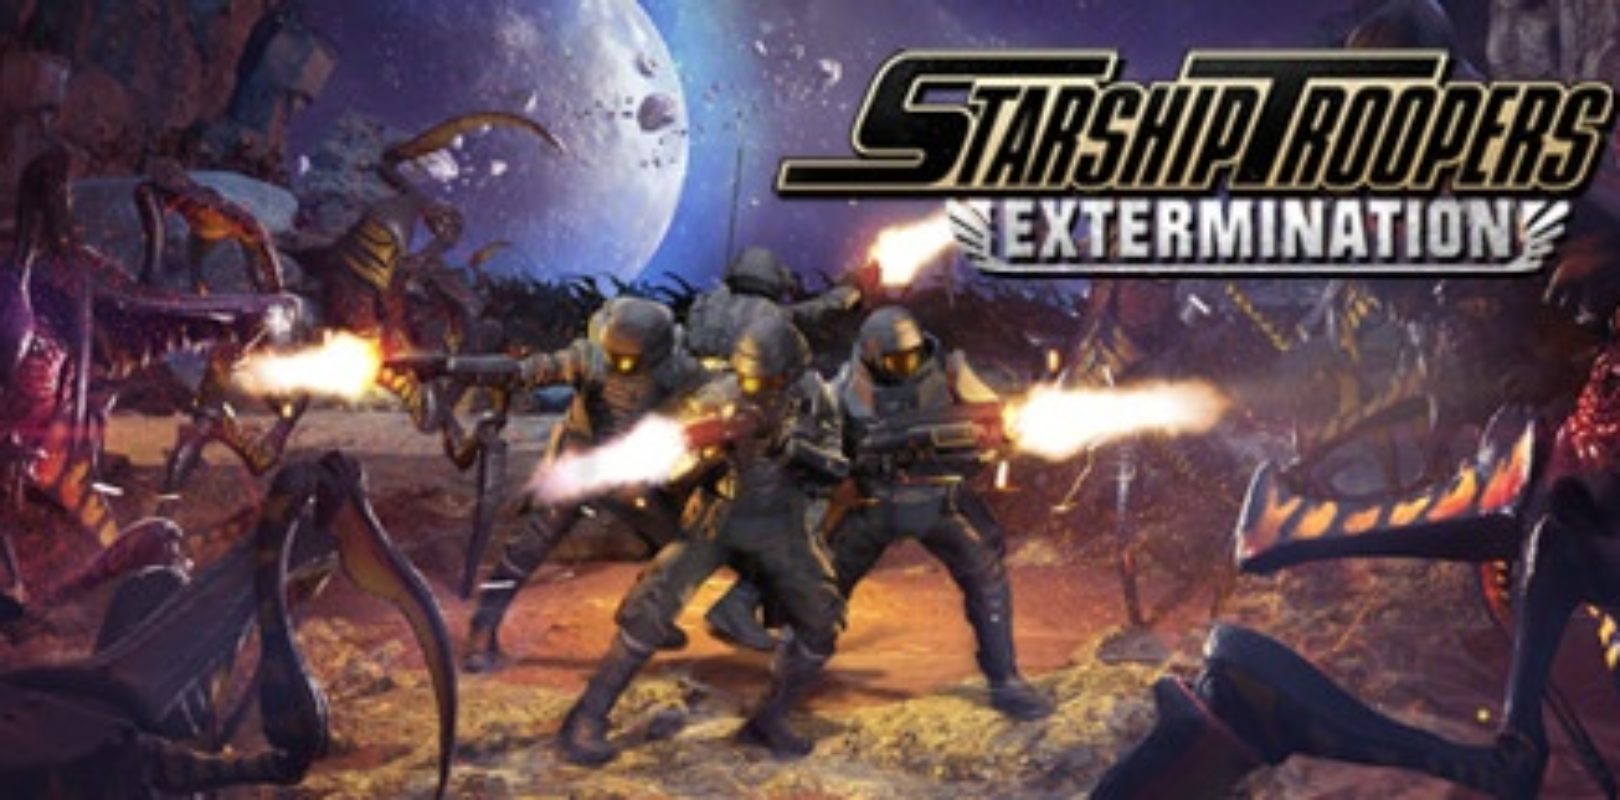 Extermina bichos en Starship Troopers: Extermination es un nuevo